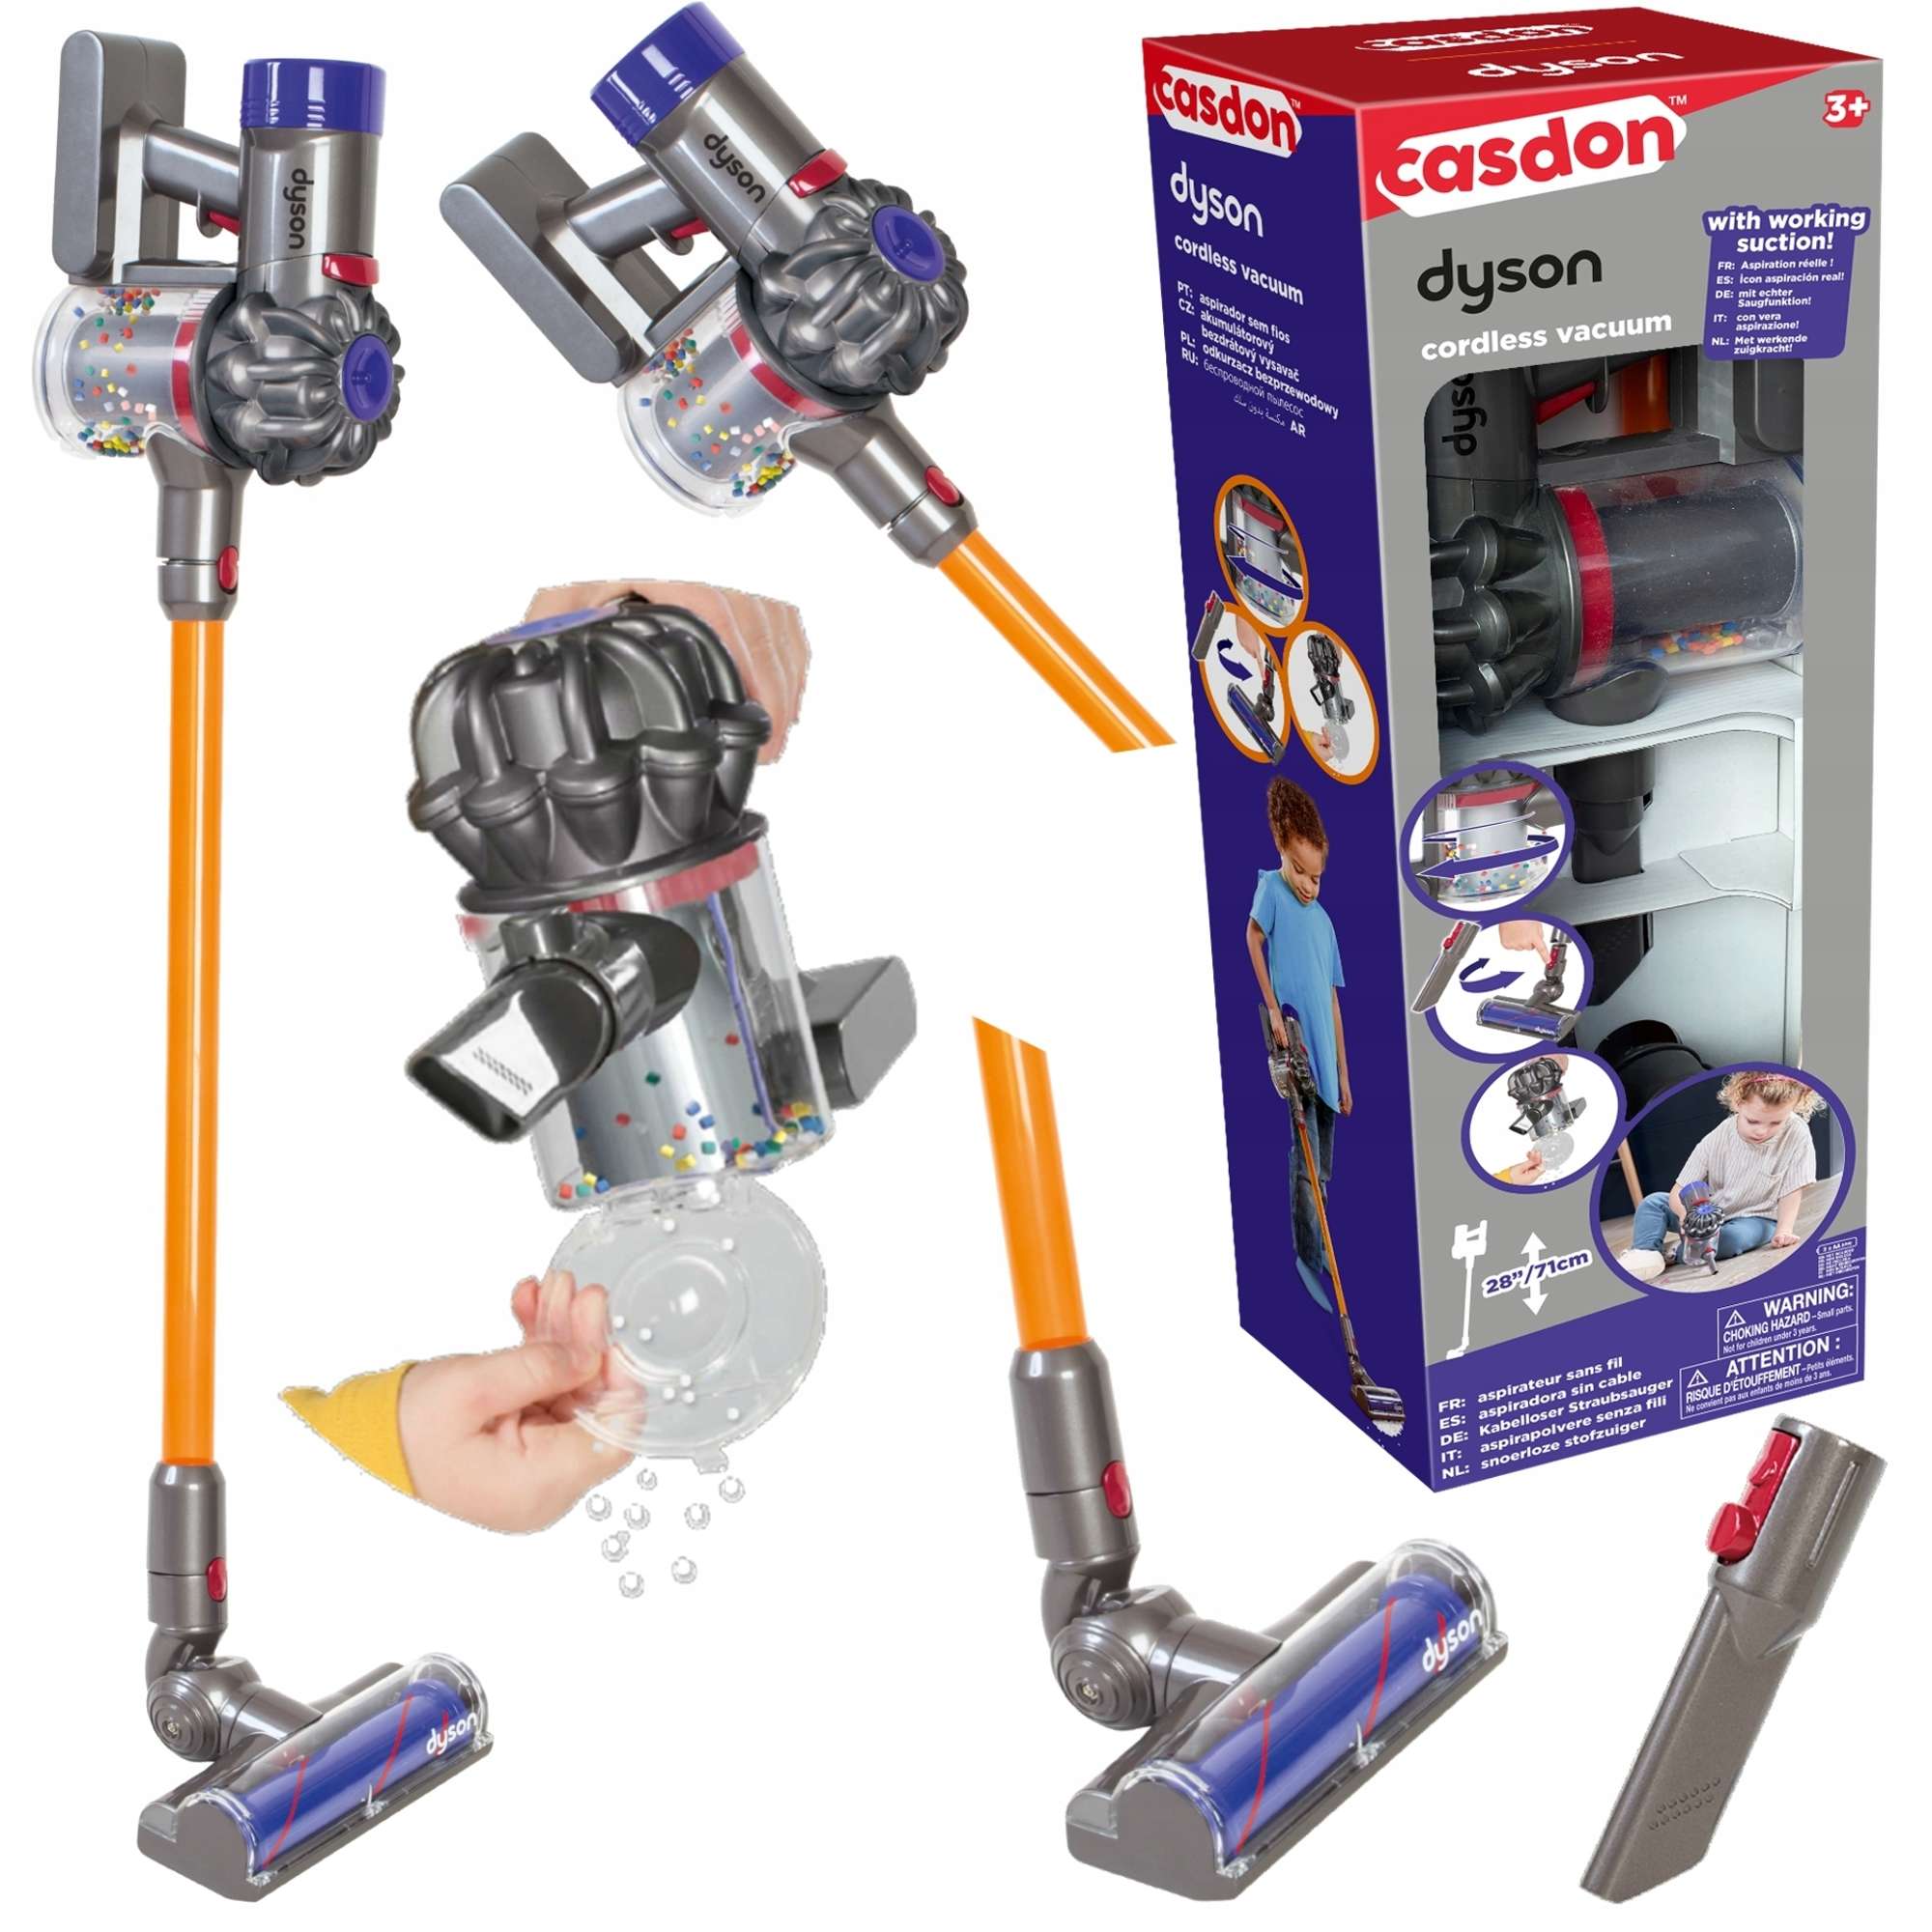 Casdon Dyson interaktive Vakuum Staubsaug Cordless Kinder Upright für Spielzeug